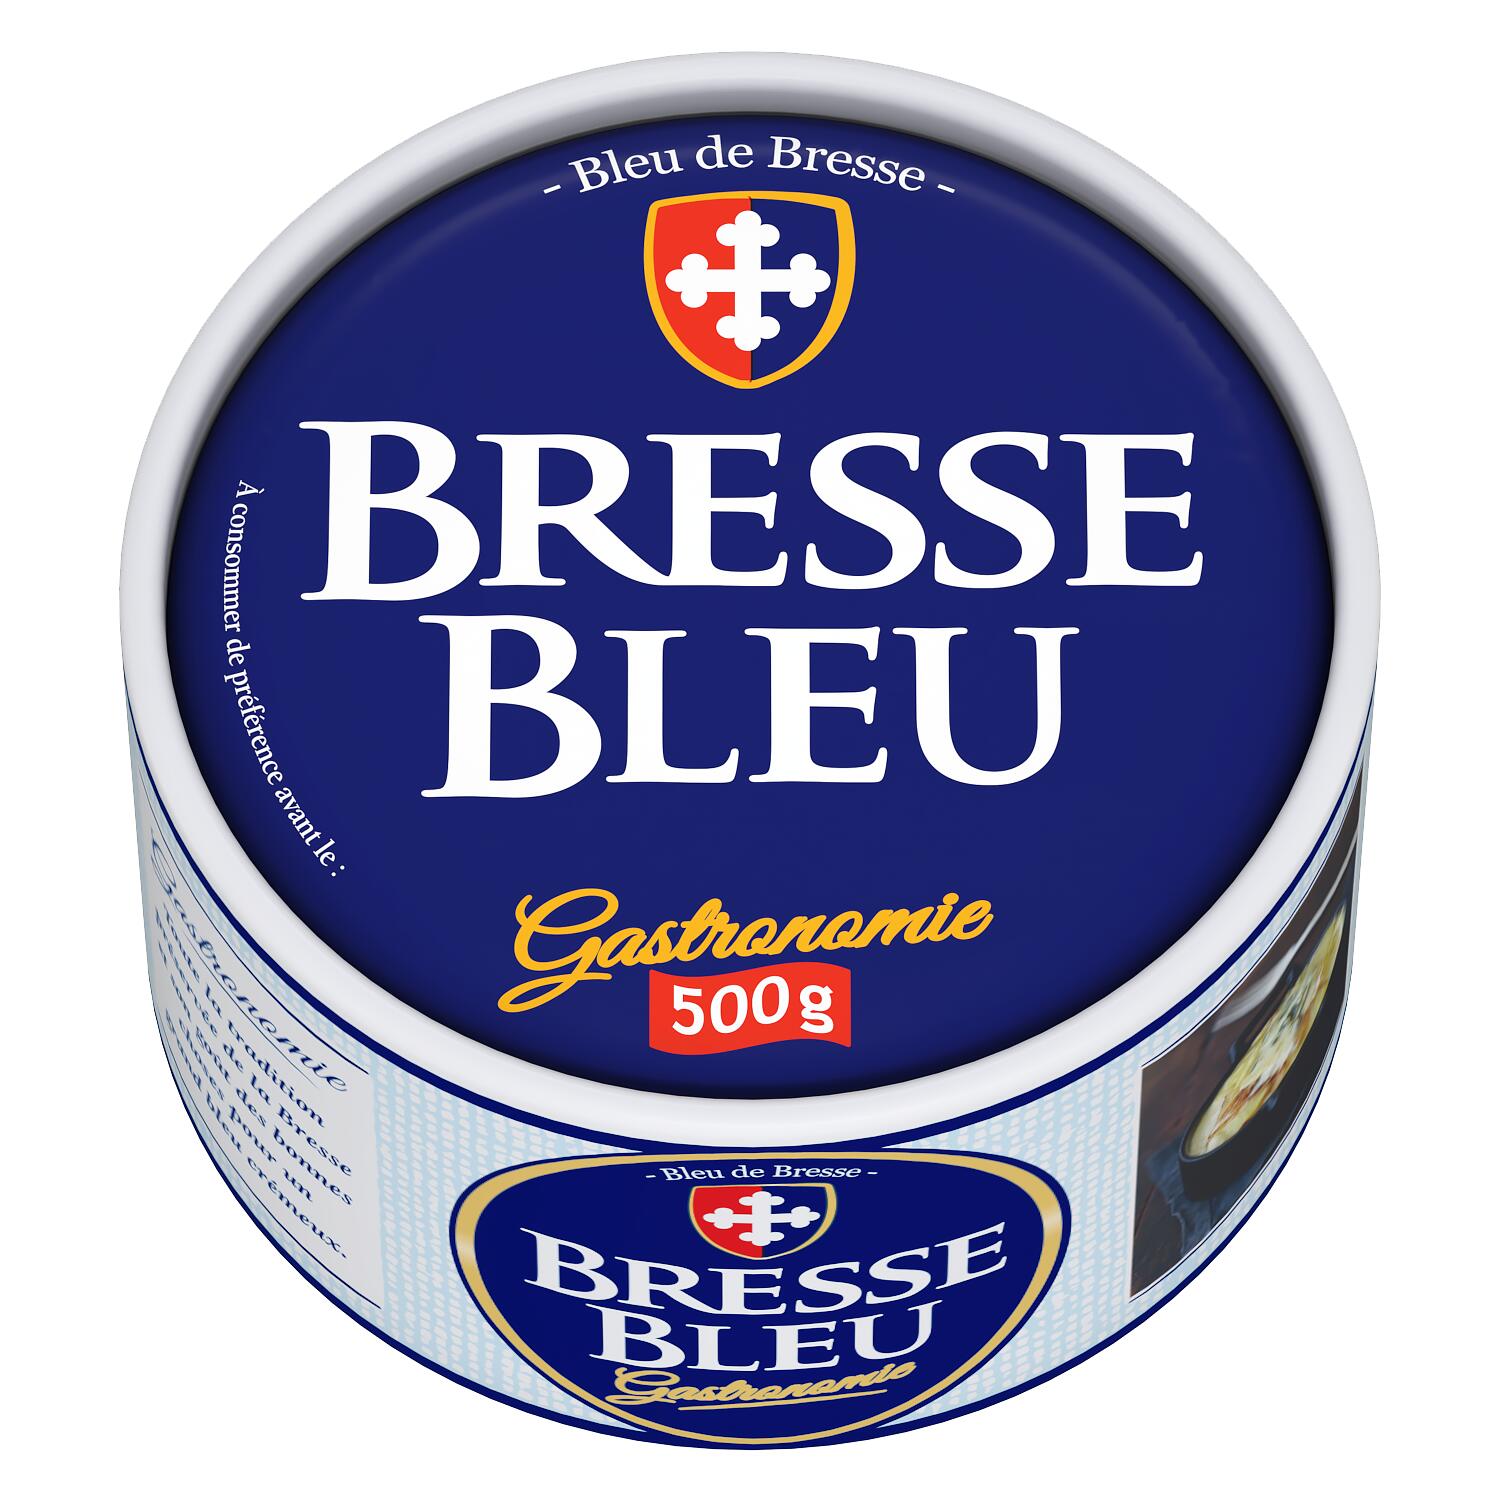 Bresse Bleu 55% Fett i.Tr. 500g